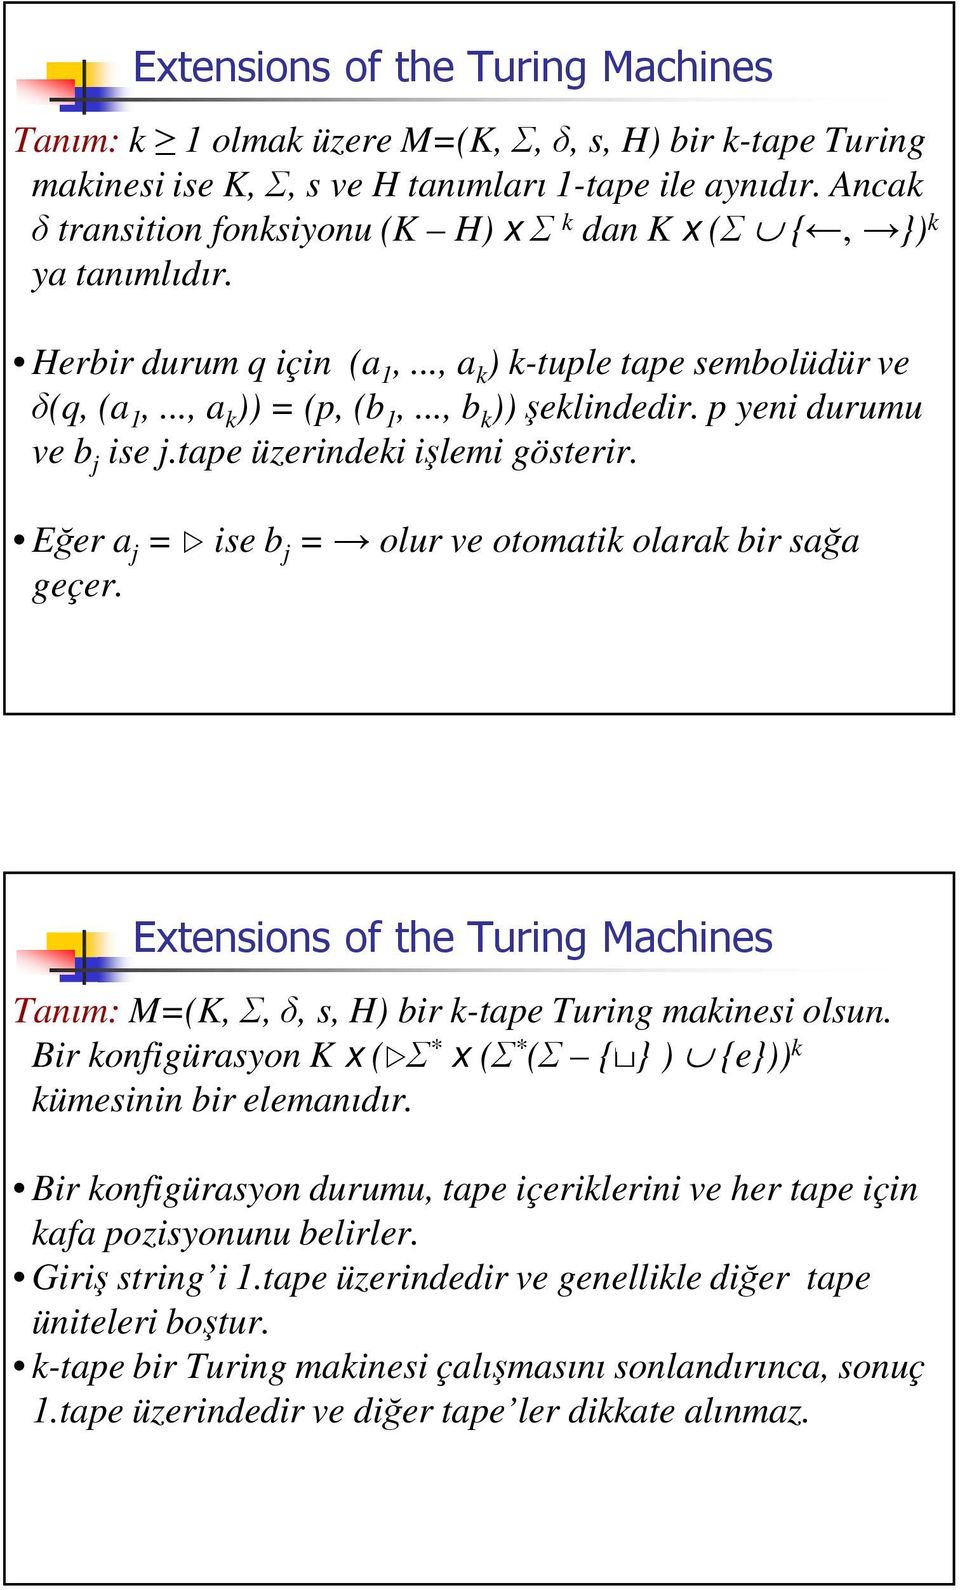 Eer a j = ise b j = olur ve otomatik olarak bir saa geçer. 134( Tanım: M=(K,,, s, H) bir k-tape Turing makinesi olsun. Bir konfigürasyon K x ( * x ( * ( {} ) {e})) k kümesinin bir elemanıdır.